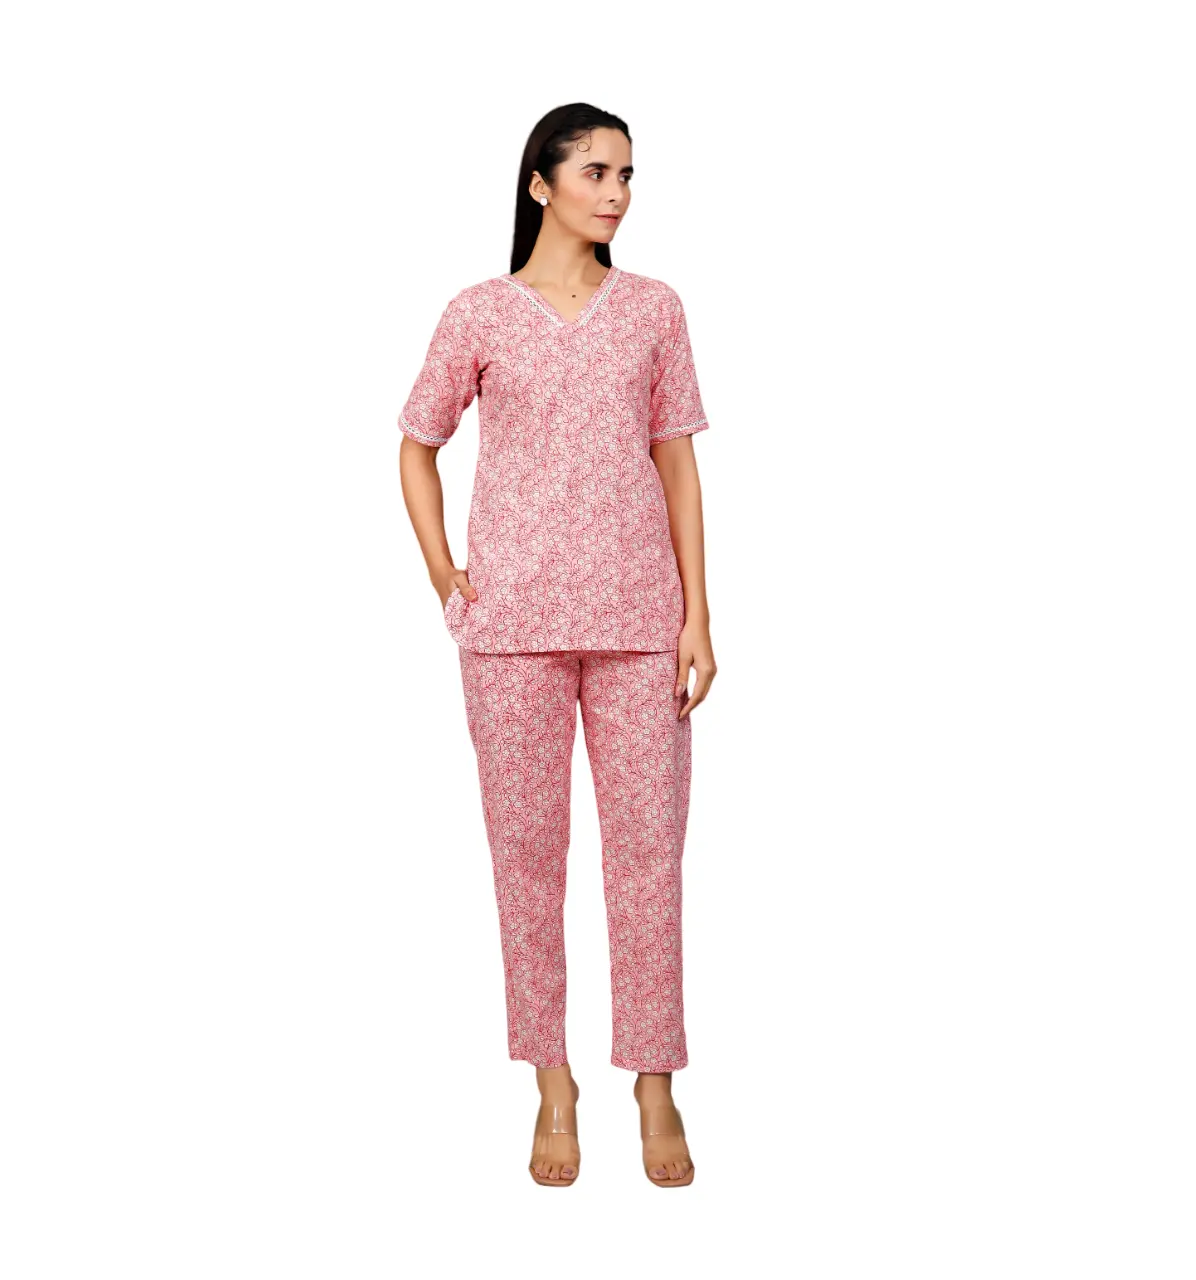 Conjuntos coordinados personalizados Conjunto rosa de Top y pantalón Conjunto de mujer Ropa de dormir informal Fabricante indio Precio al por mayor